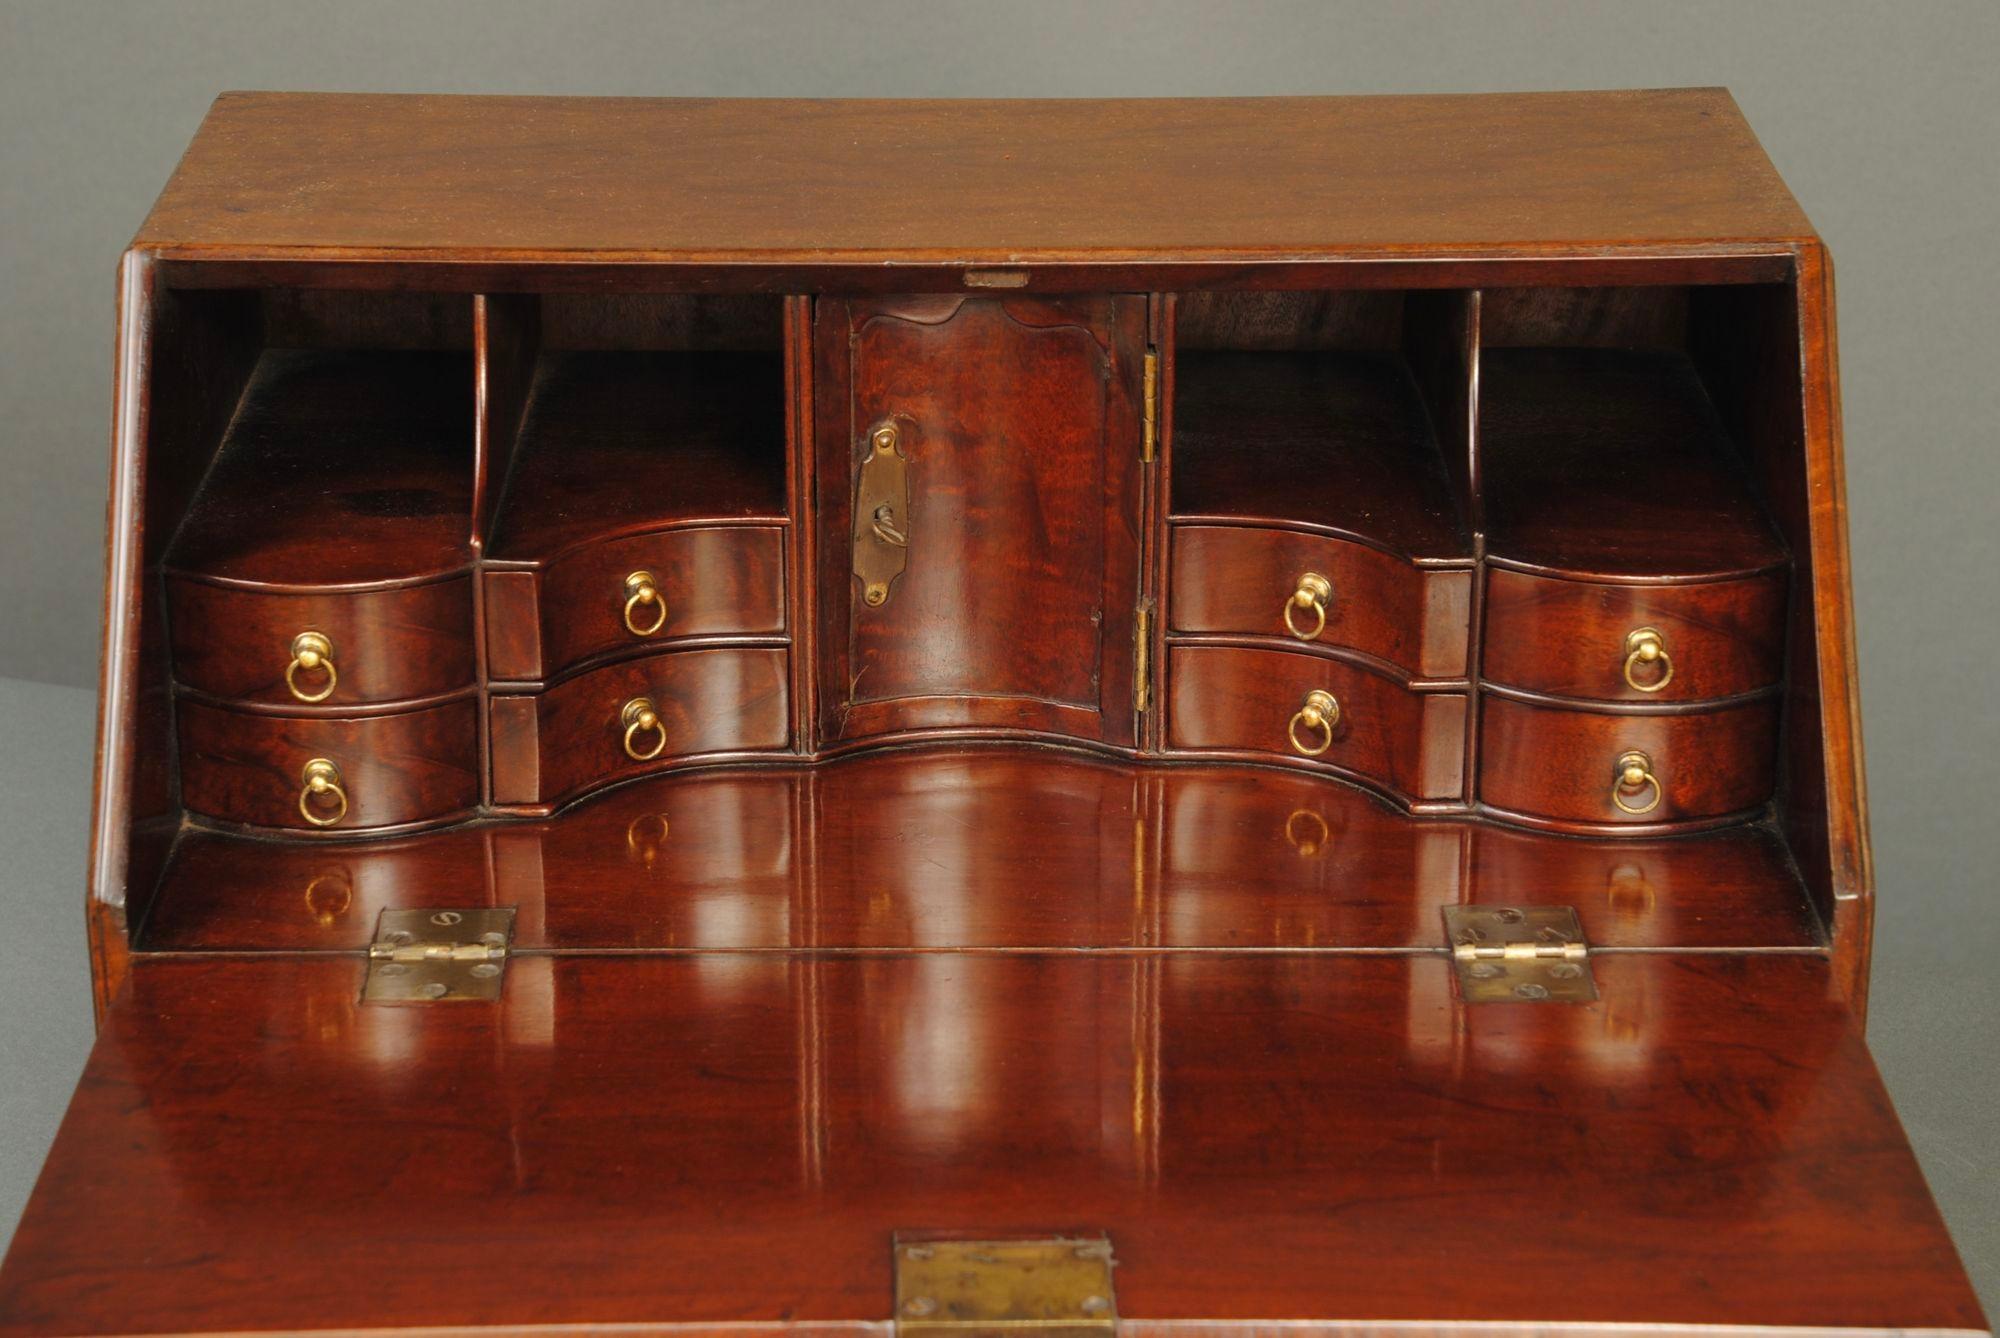 European A Rare Miniature 18th Century Mahogany Table Bureau